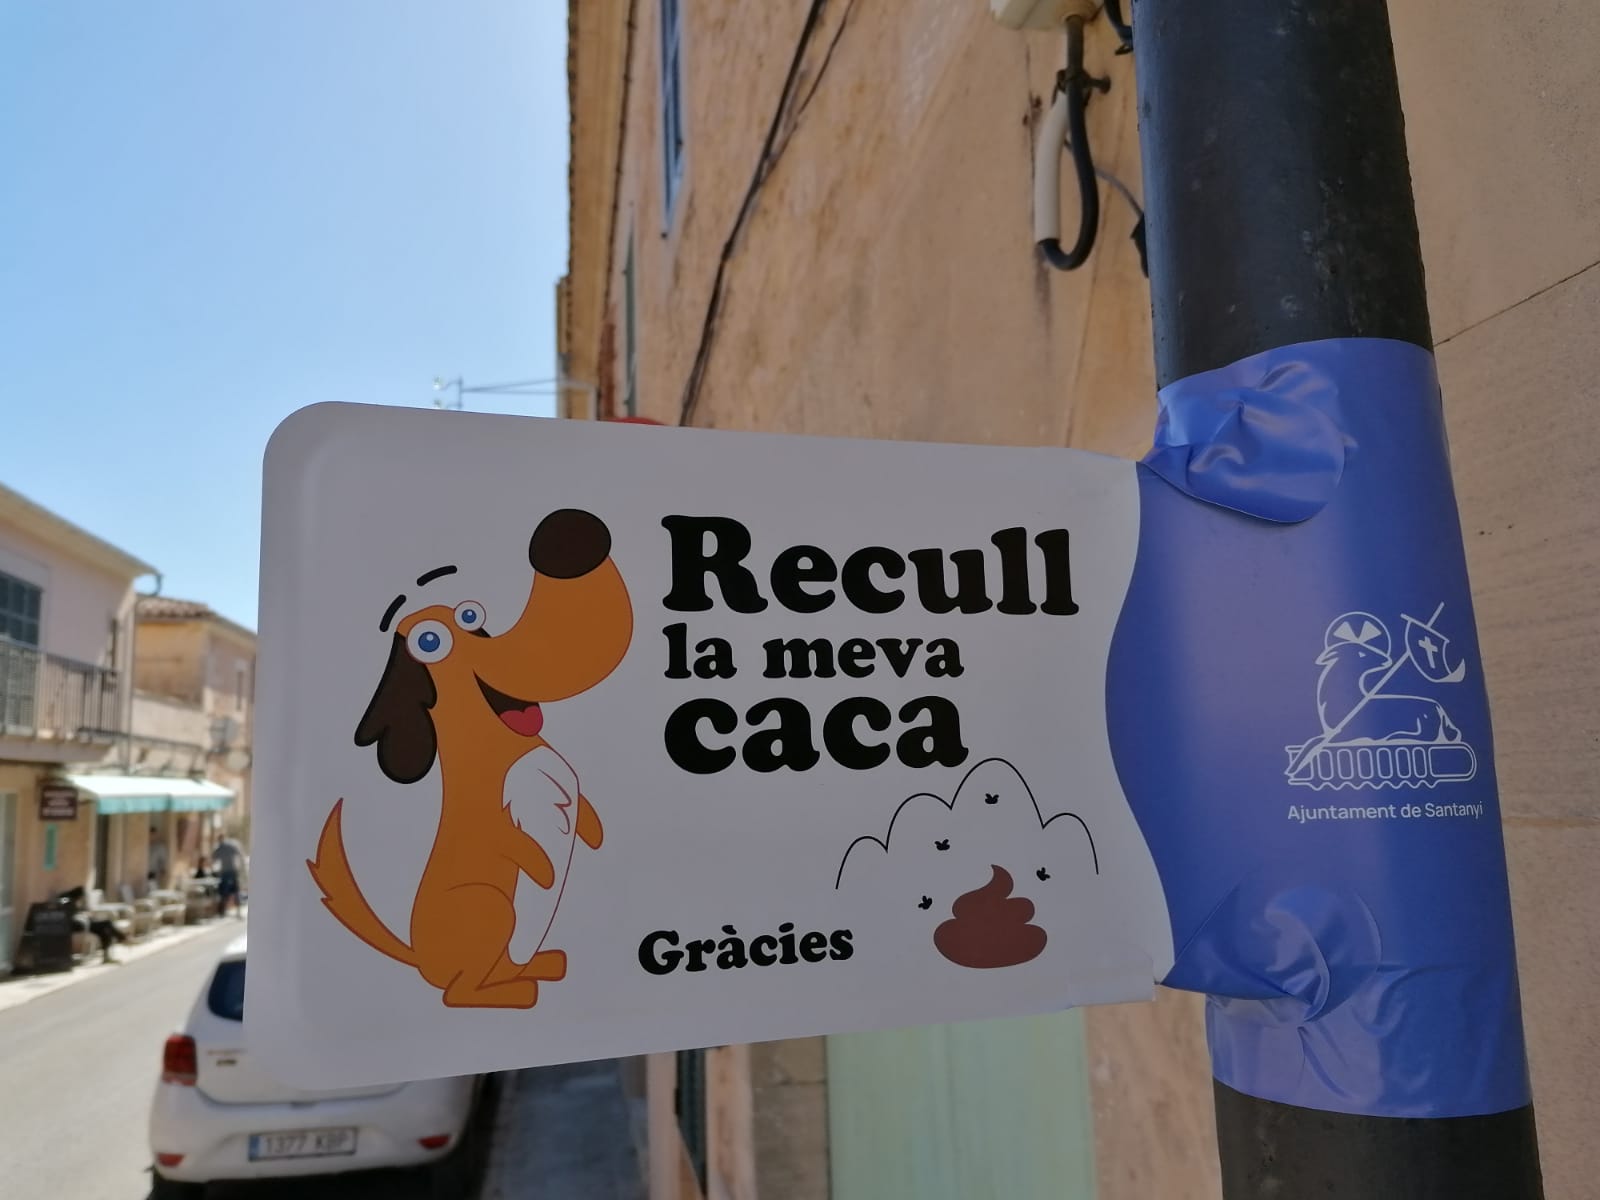 L'Ajuntament de Santanyí, a través de la Regidoria de Medi Ambient, ha iniciat una campanya destinada a fomentar la neteja dels carrers i la responsabilitat dels propietaris de cans en relació amb la recollida d'excrements dels seus animals. En un esforç per mantenir els carrers lliures d'excrements i residus canins, s'han col·locat cartells informatius als carrers de tots els nuclis de població del municipi de Santanyí, recordant als propietaris de cans la seva obligació de recollir els excrements dels seus animals. A més, s'han distribuït pots de plàstic per omplir-les d'aigua i vinagre, amb la finalitat de diluir la brutor quan un animal orina a les voreres o contra un edifici. També s'han repartit porta bosses per facilitar la recollida d'excrements. La batlessa de Santanyí, Maria Pons, ha expressat el seu agraïment a la ciutadania per la seva col·laboració i la positiva acollida que ha tingut la campanya durant les primeres setmanes. "És essencial que tots contribuïm a mantenir els nostres carrers nets i ordenats, i la participació activa dels ciutadans és fonamental en aquest sentit", ha declarat la batlessa. La campanya es va iniciar al nucli des Llombards amb la participació conjunta dels alumnes i els professors del CEIP Sant Domingo. Els estudiants van elaborar tríptics informatius amb informació sobre les papereres disponibles al poble per a la recollida d'excrements, que van ser distribuïts entre els propietaris de cans. És important recordar que existeixen ordenances municipals que regulen els comportaments incívics, inclosa la no recollida d'excrements animals, i que les persones que incompleixin aquestes normatives poden ser sotmeses a sancions. Per a més informació sobre la campanya i els recursos disponibles, es pot contactar amb la Regidoria de Medi Ambient de l'Ajuntament de Santanyí.